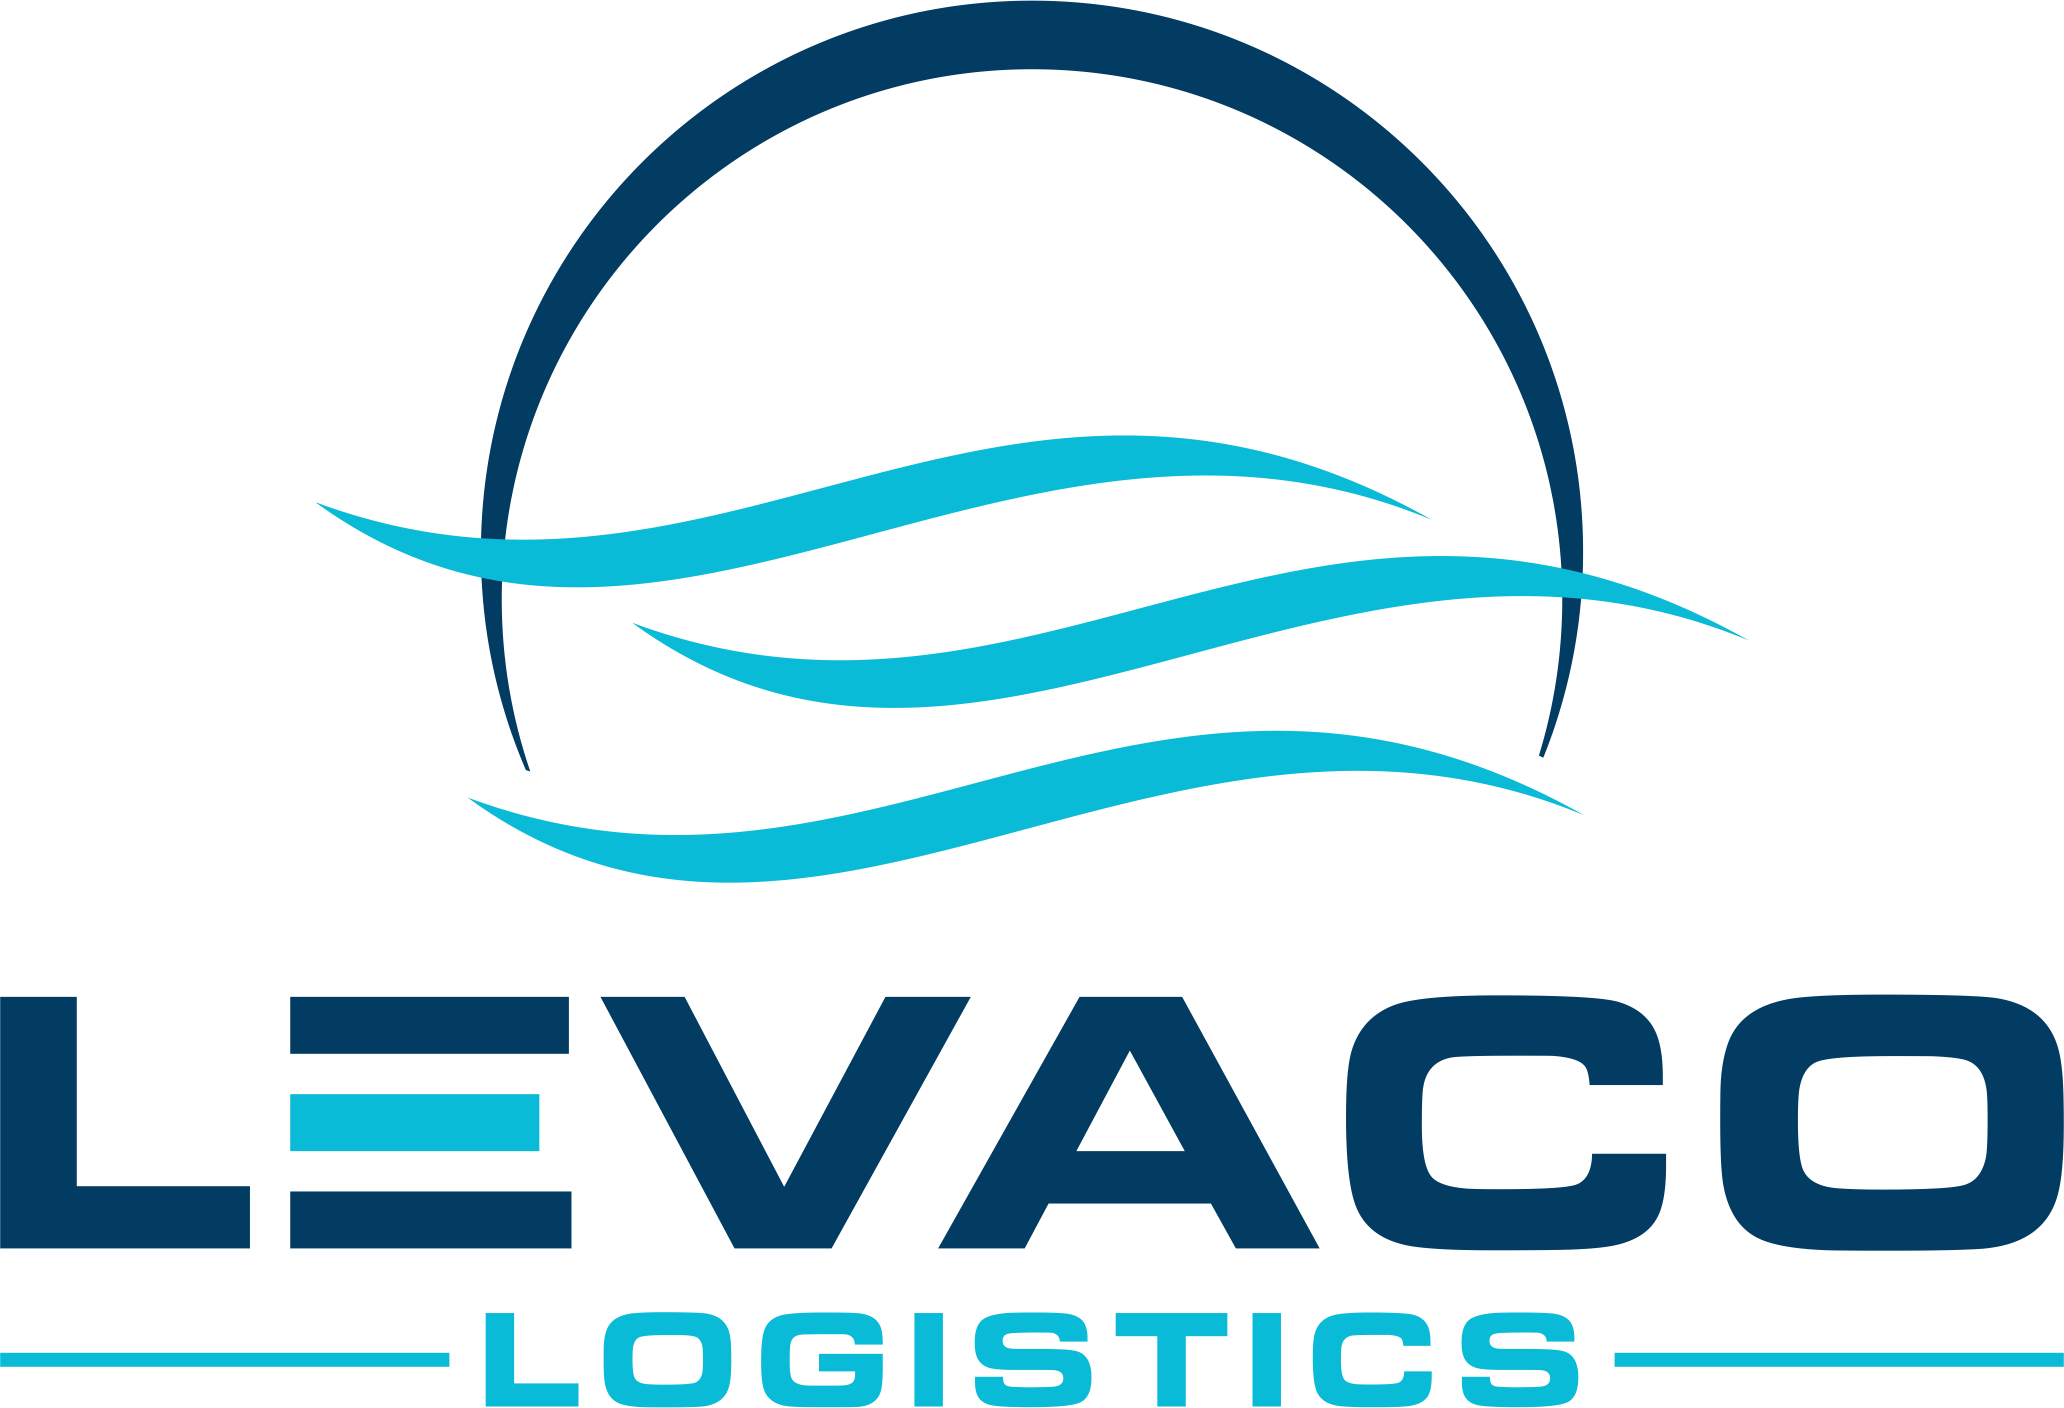 Levaco Logo